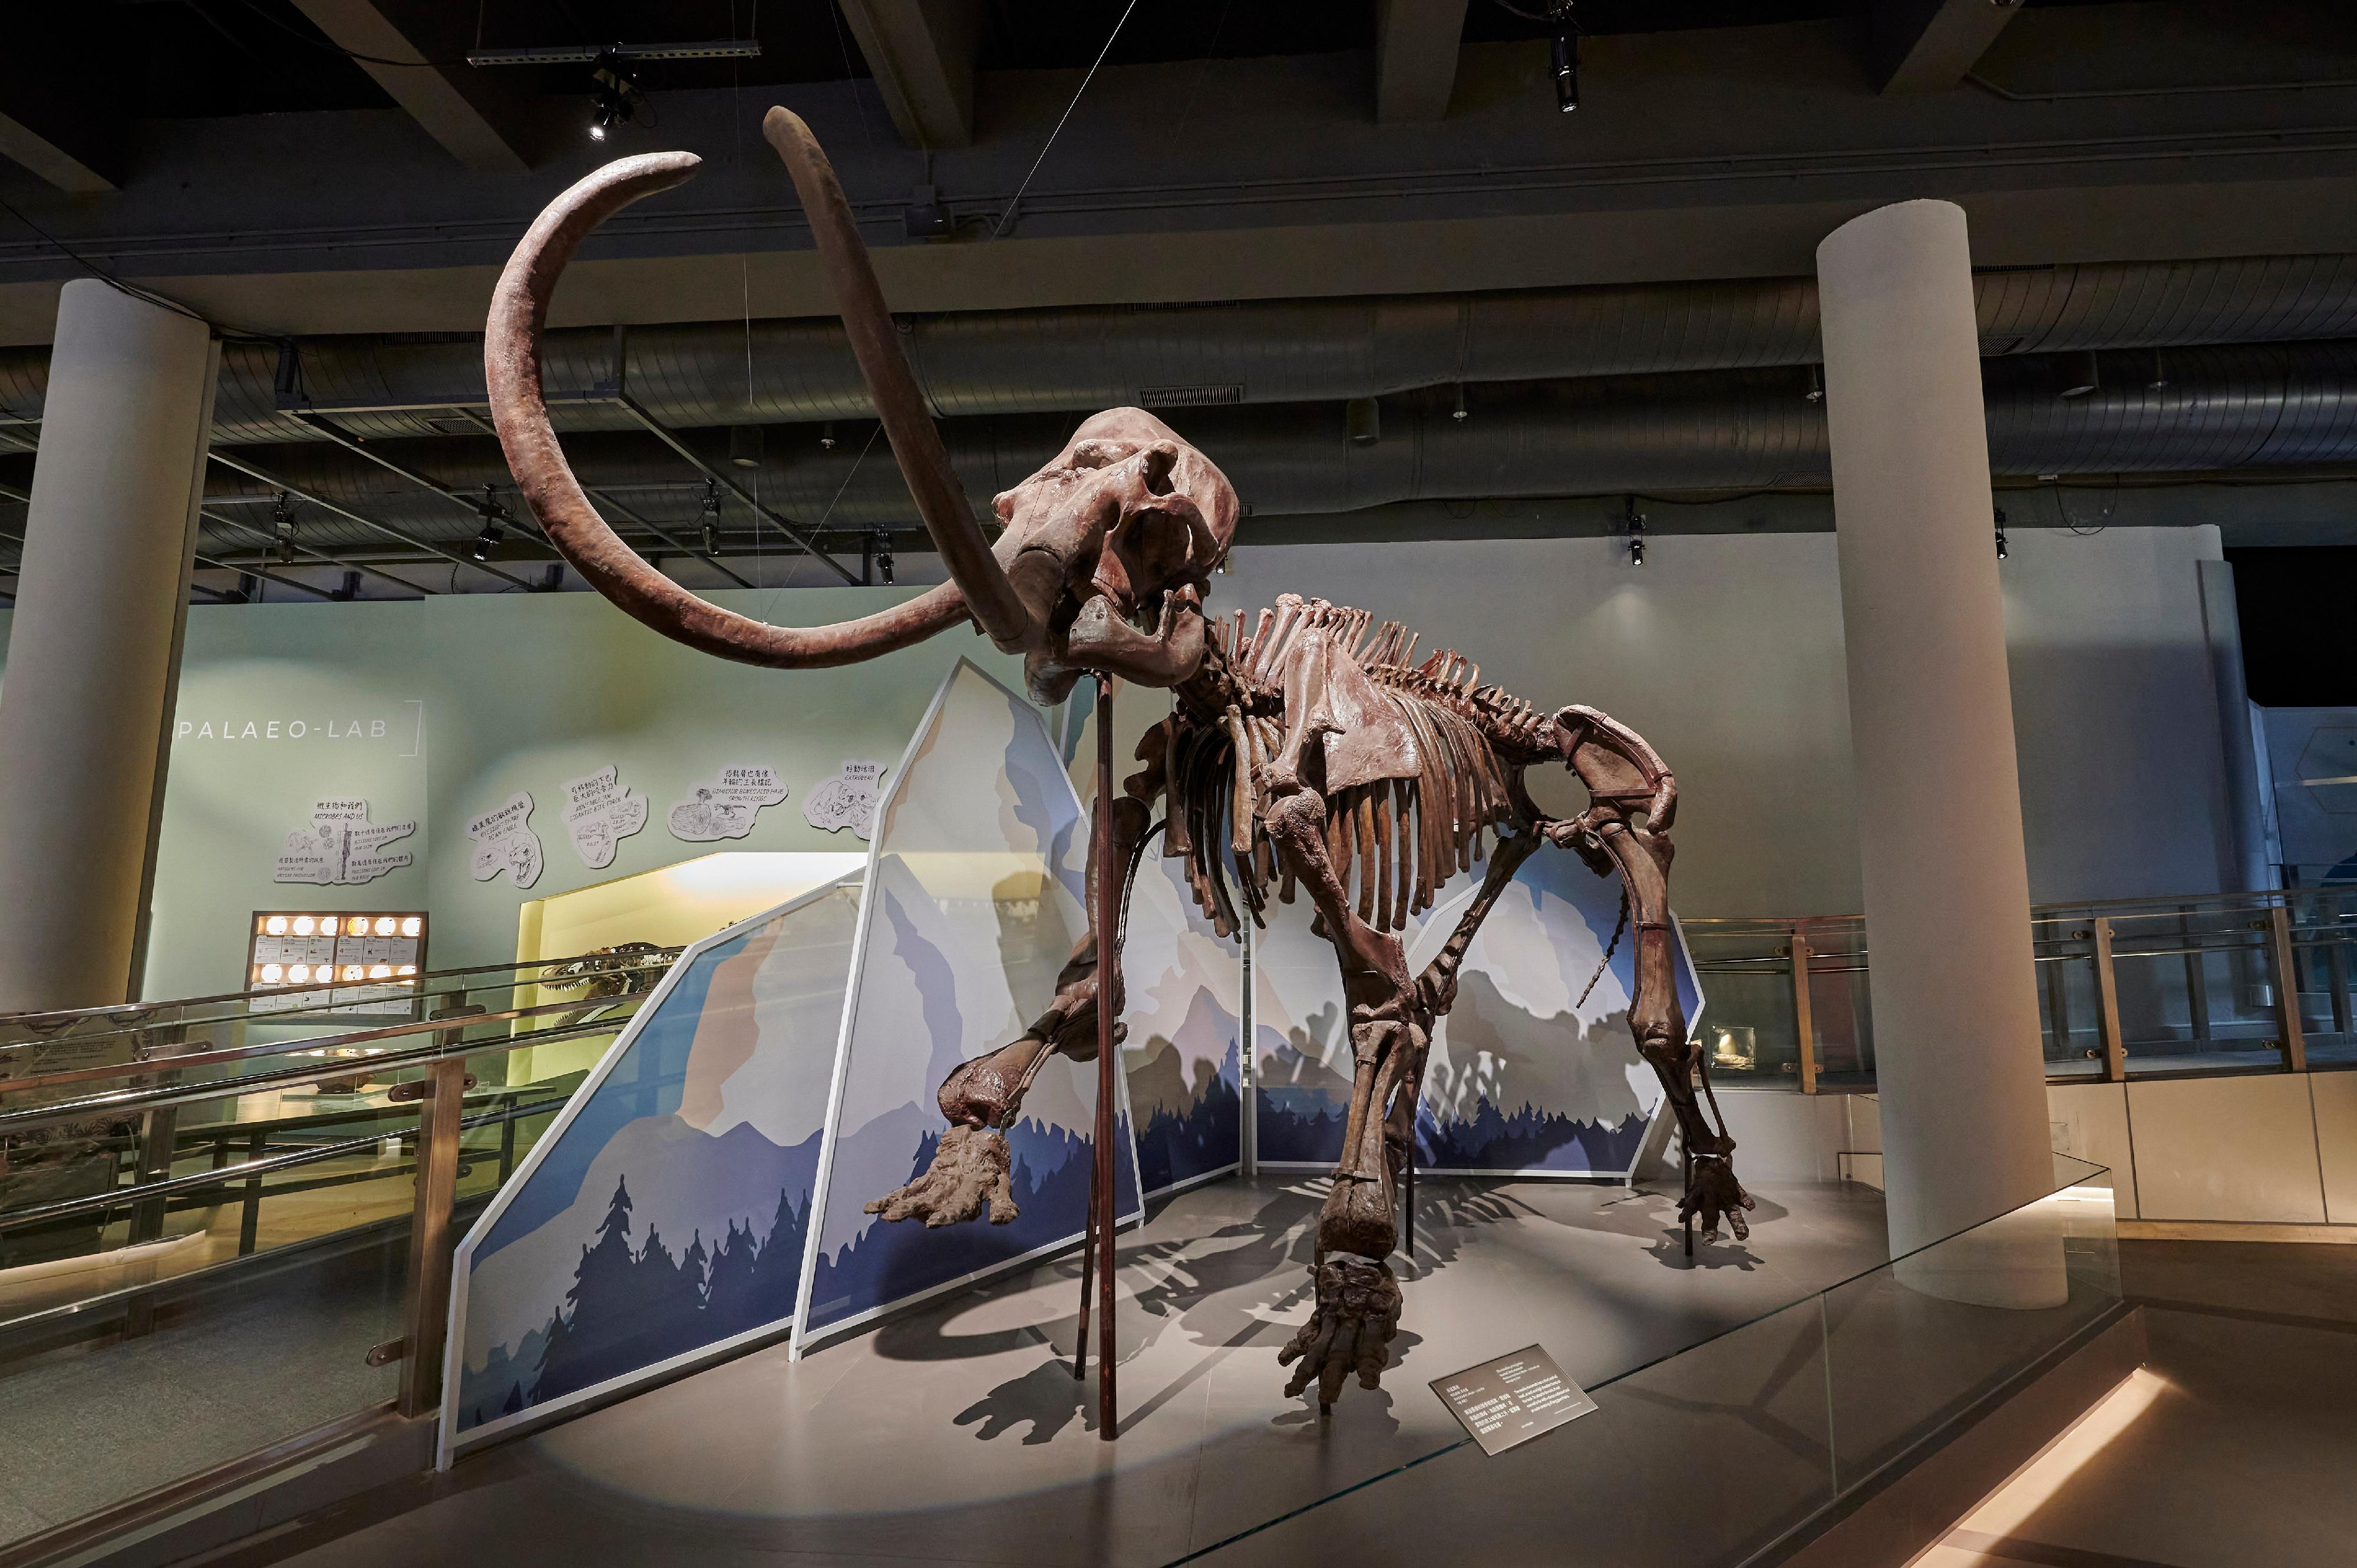 即將歸還予國家自然博物館、超過三米高的真猛獁象化石。